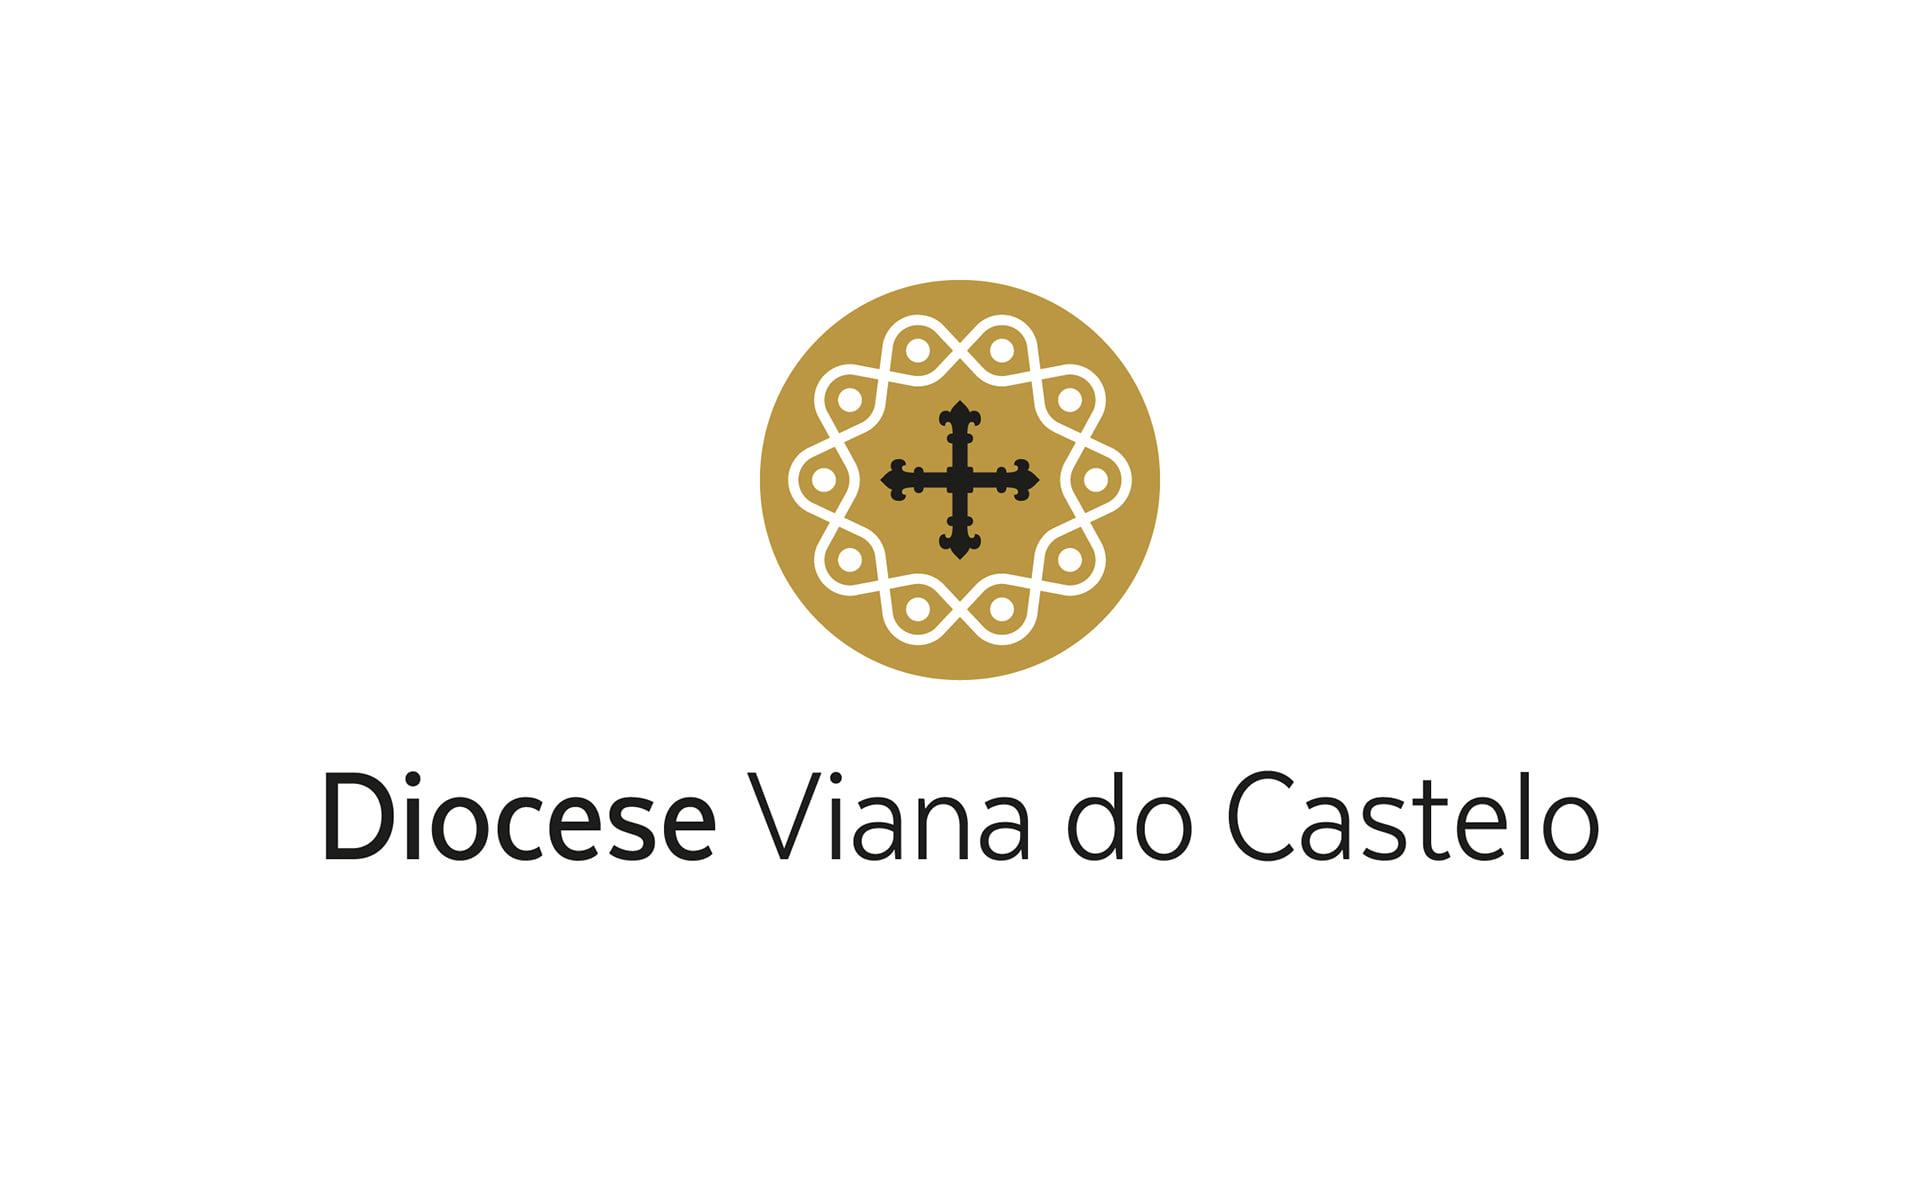 MENSAGEM DA DIOCESE DE VIANA DO CASTELO